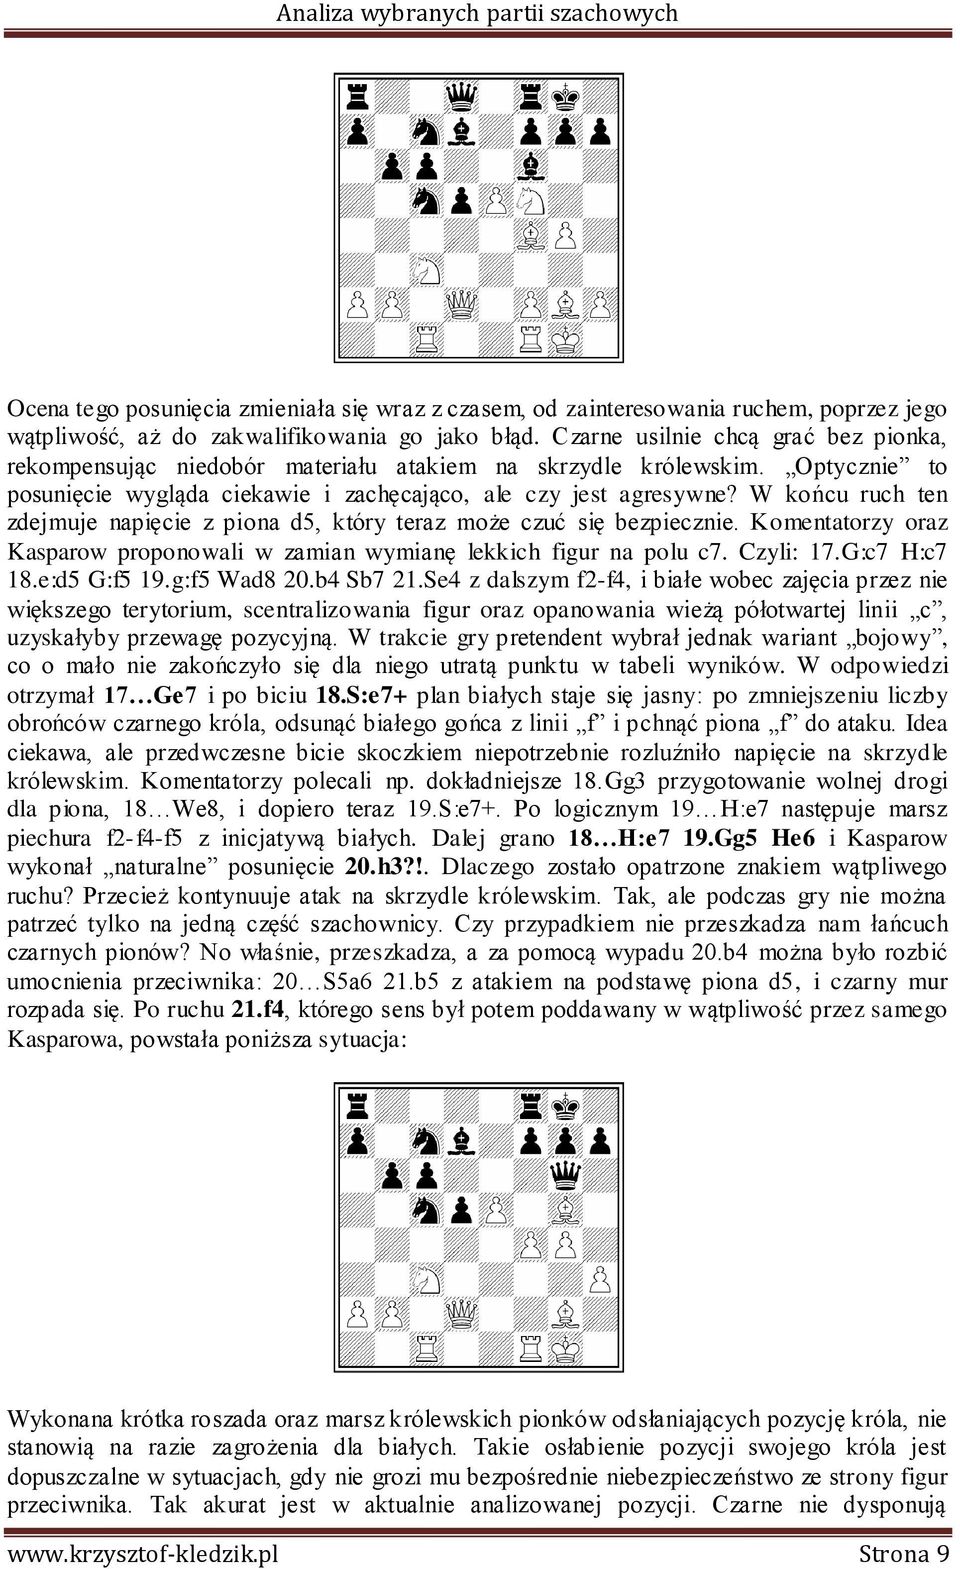 W końcu ruch ten zdejmuje napięcie z piona d5, który teraz może czuć się bezpiecznie. Komentatorzy oraz Kasparow proponowali w zamian wymianę lekkich figur na polu c7. Czyli: 17.G:c7 H:c7 18.